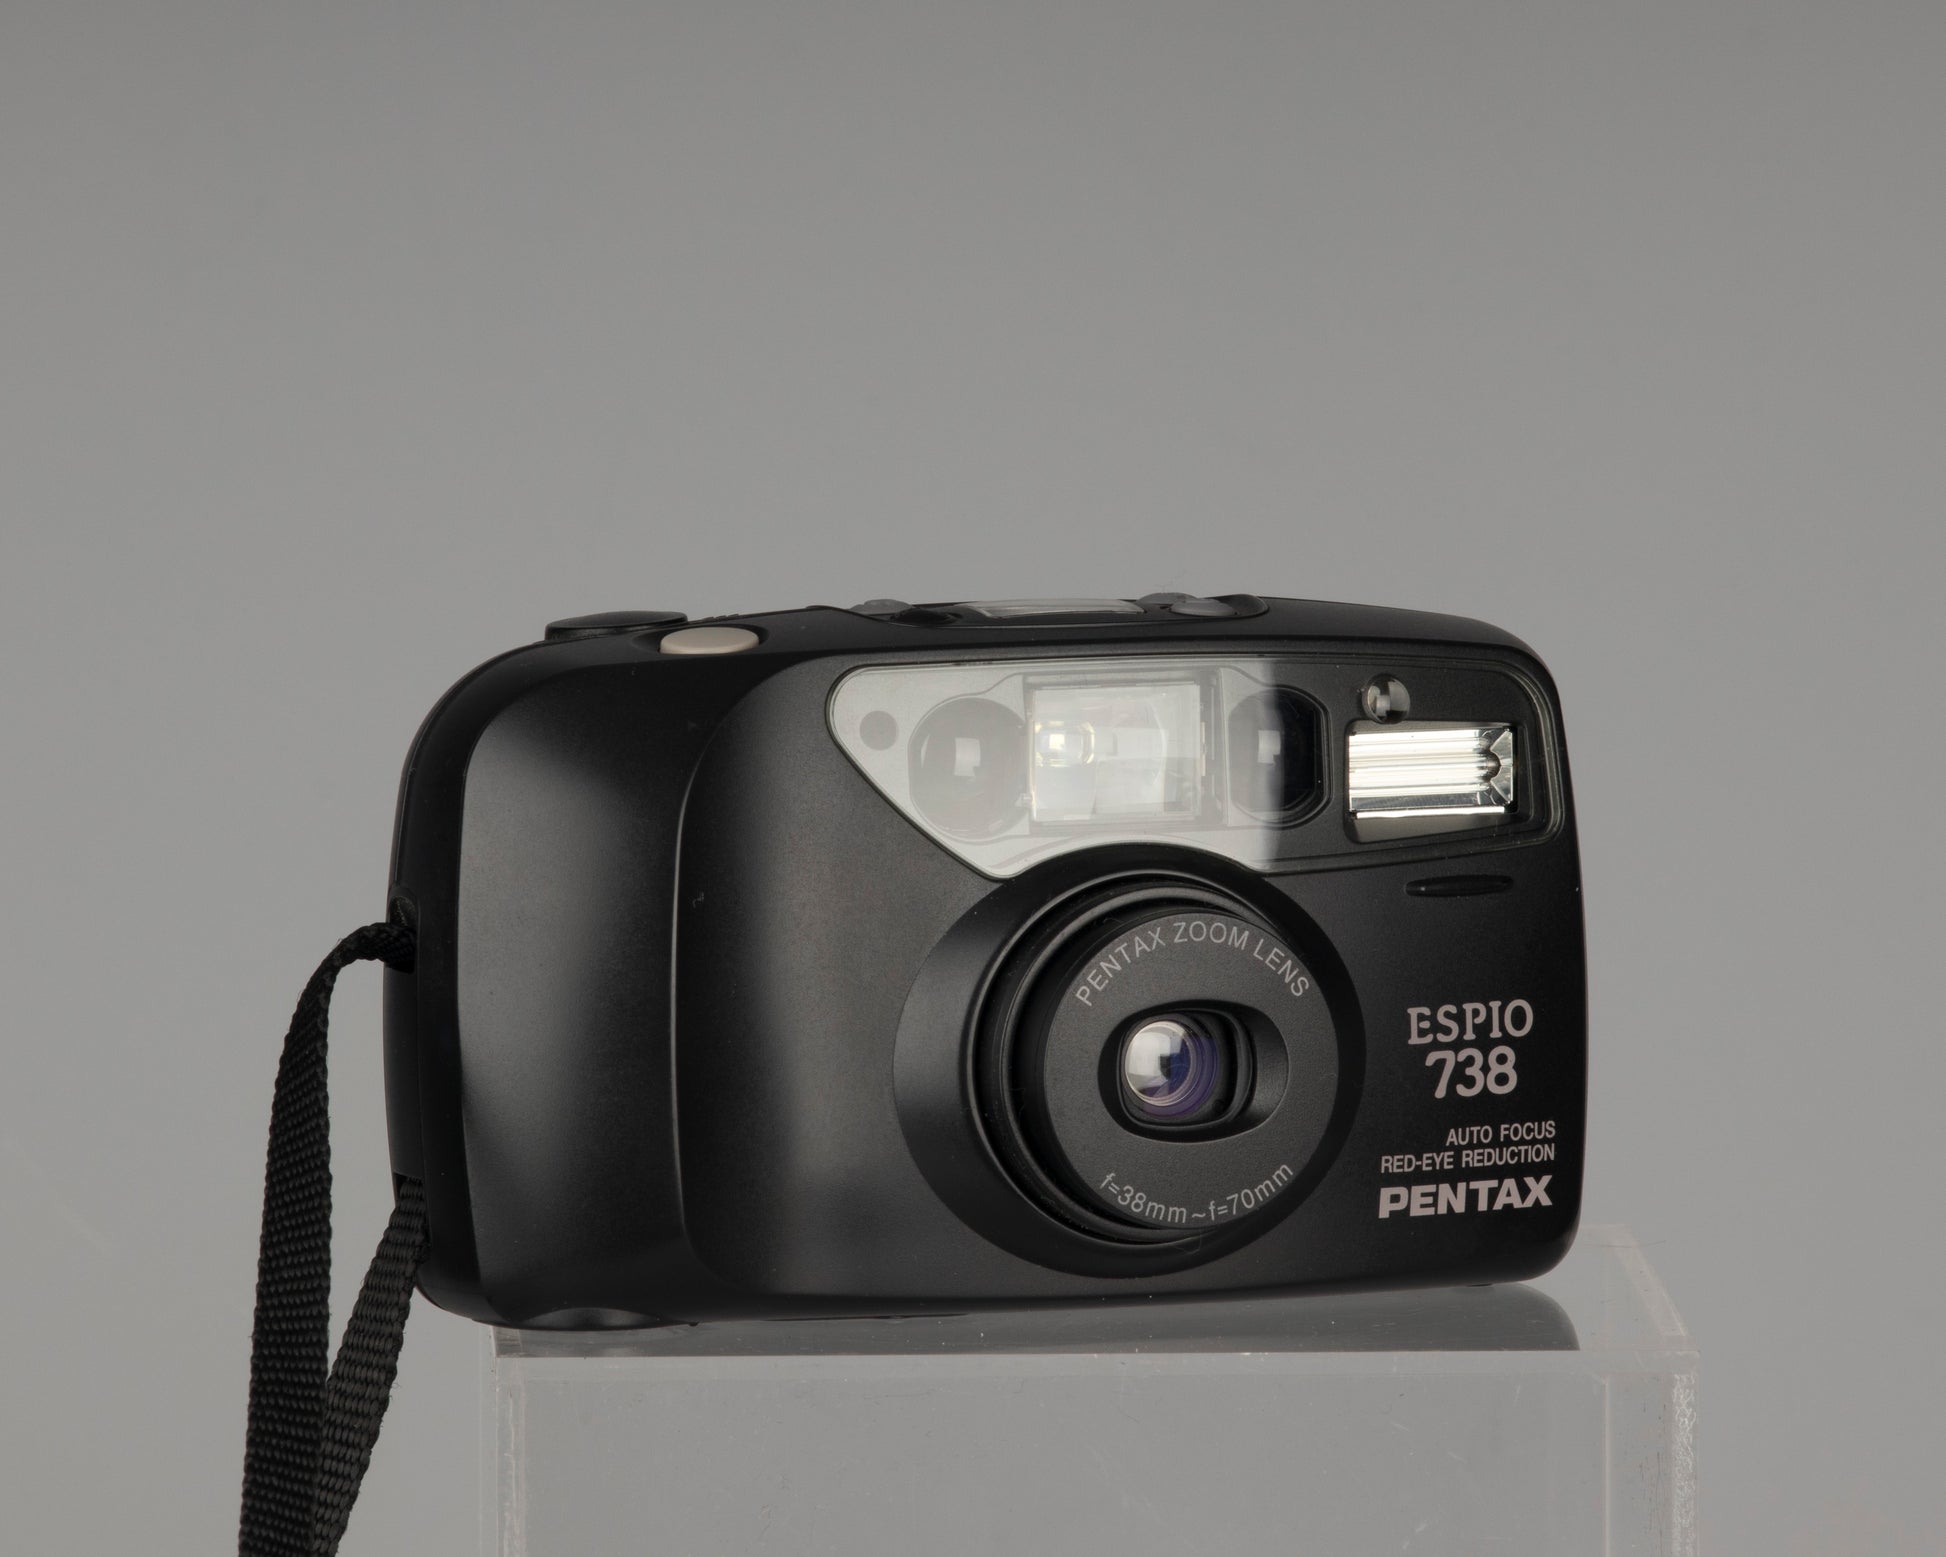 Pentax Espio 738 35mm film camera